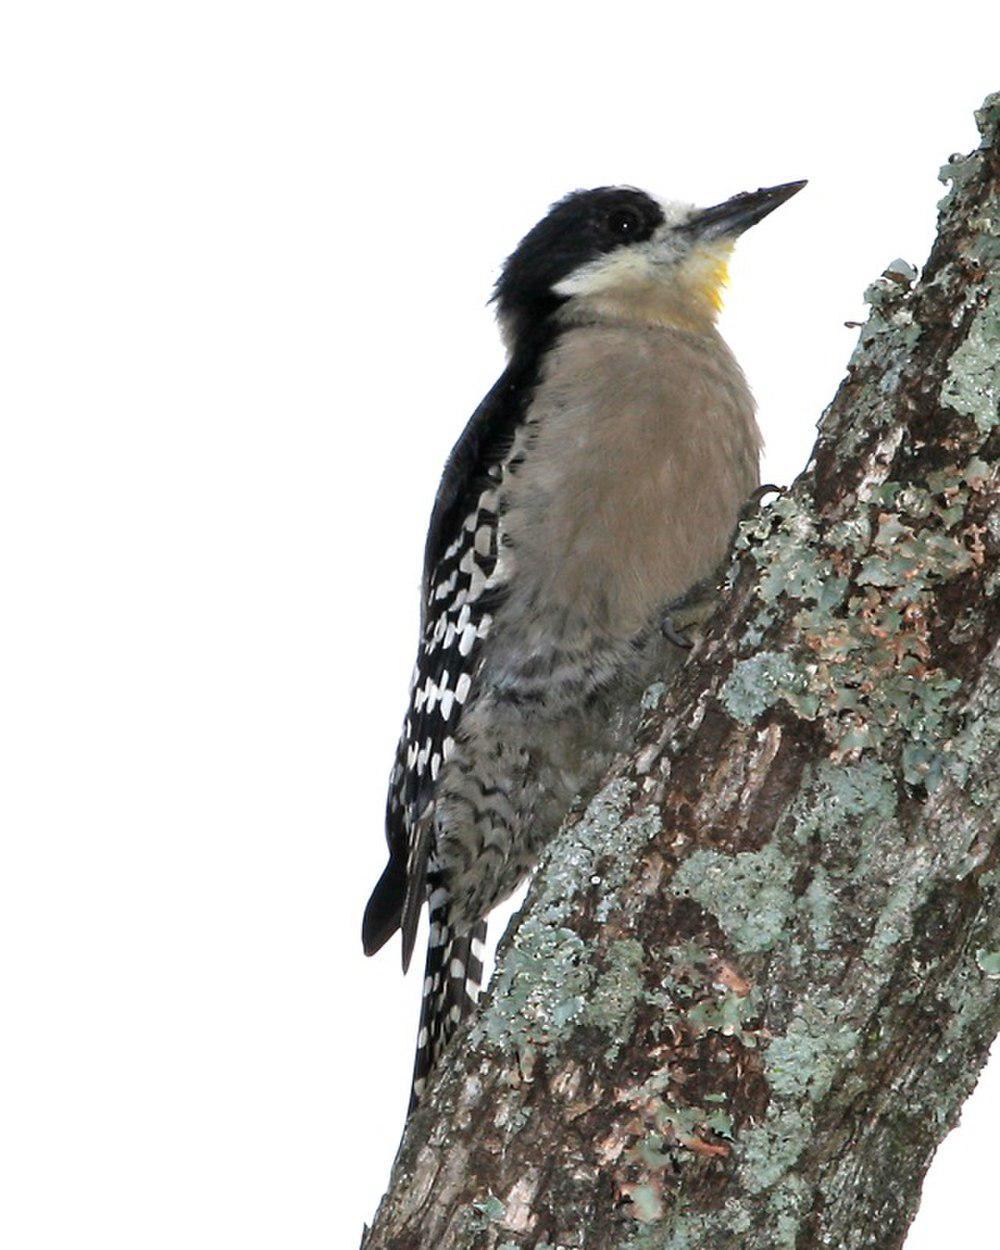 白额啄木鸟 / White-fronted Woodpecker / Melanerpes cactorum